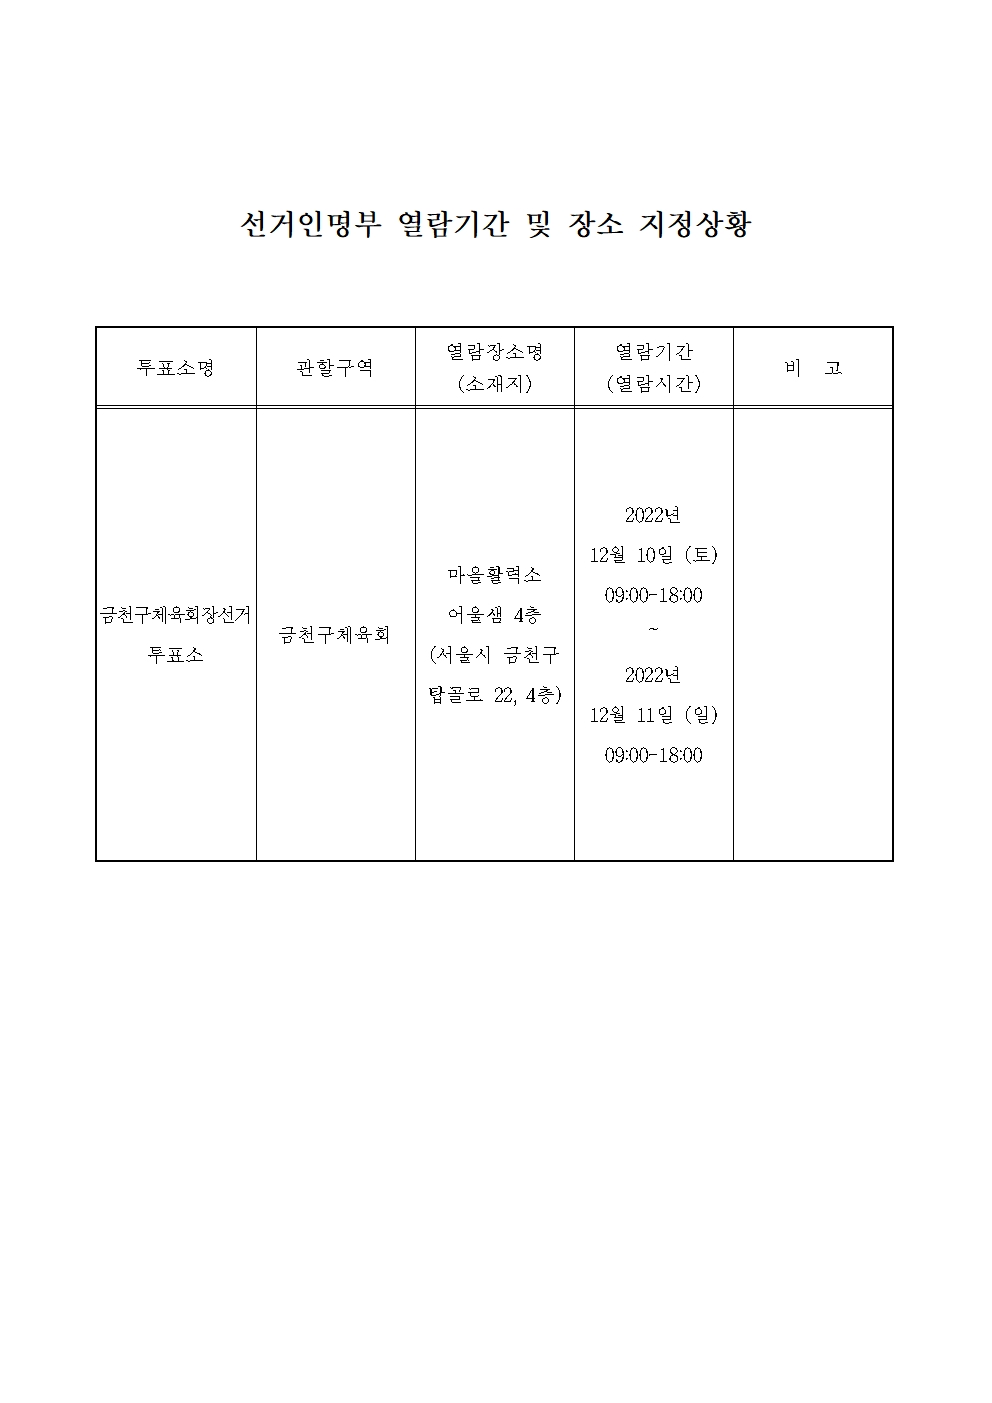 선거인명부 열람기간 및 장소 지정상황.jpg